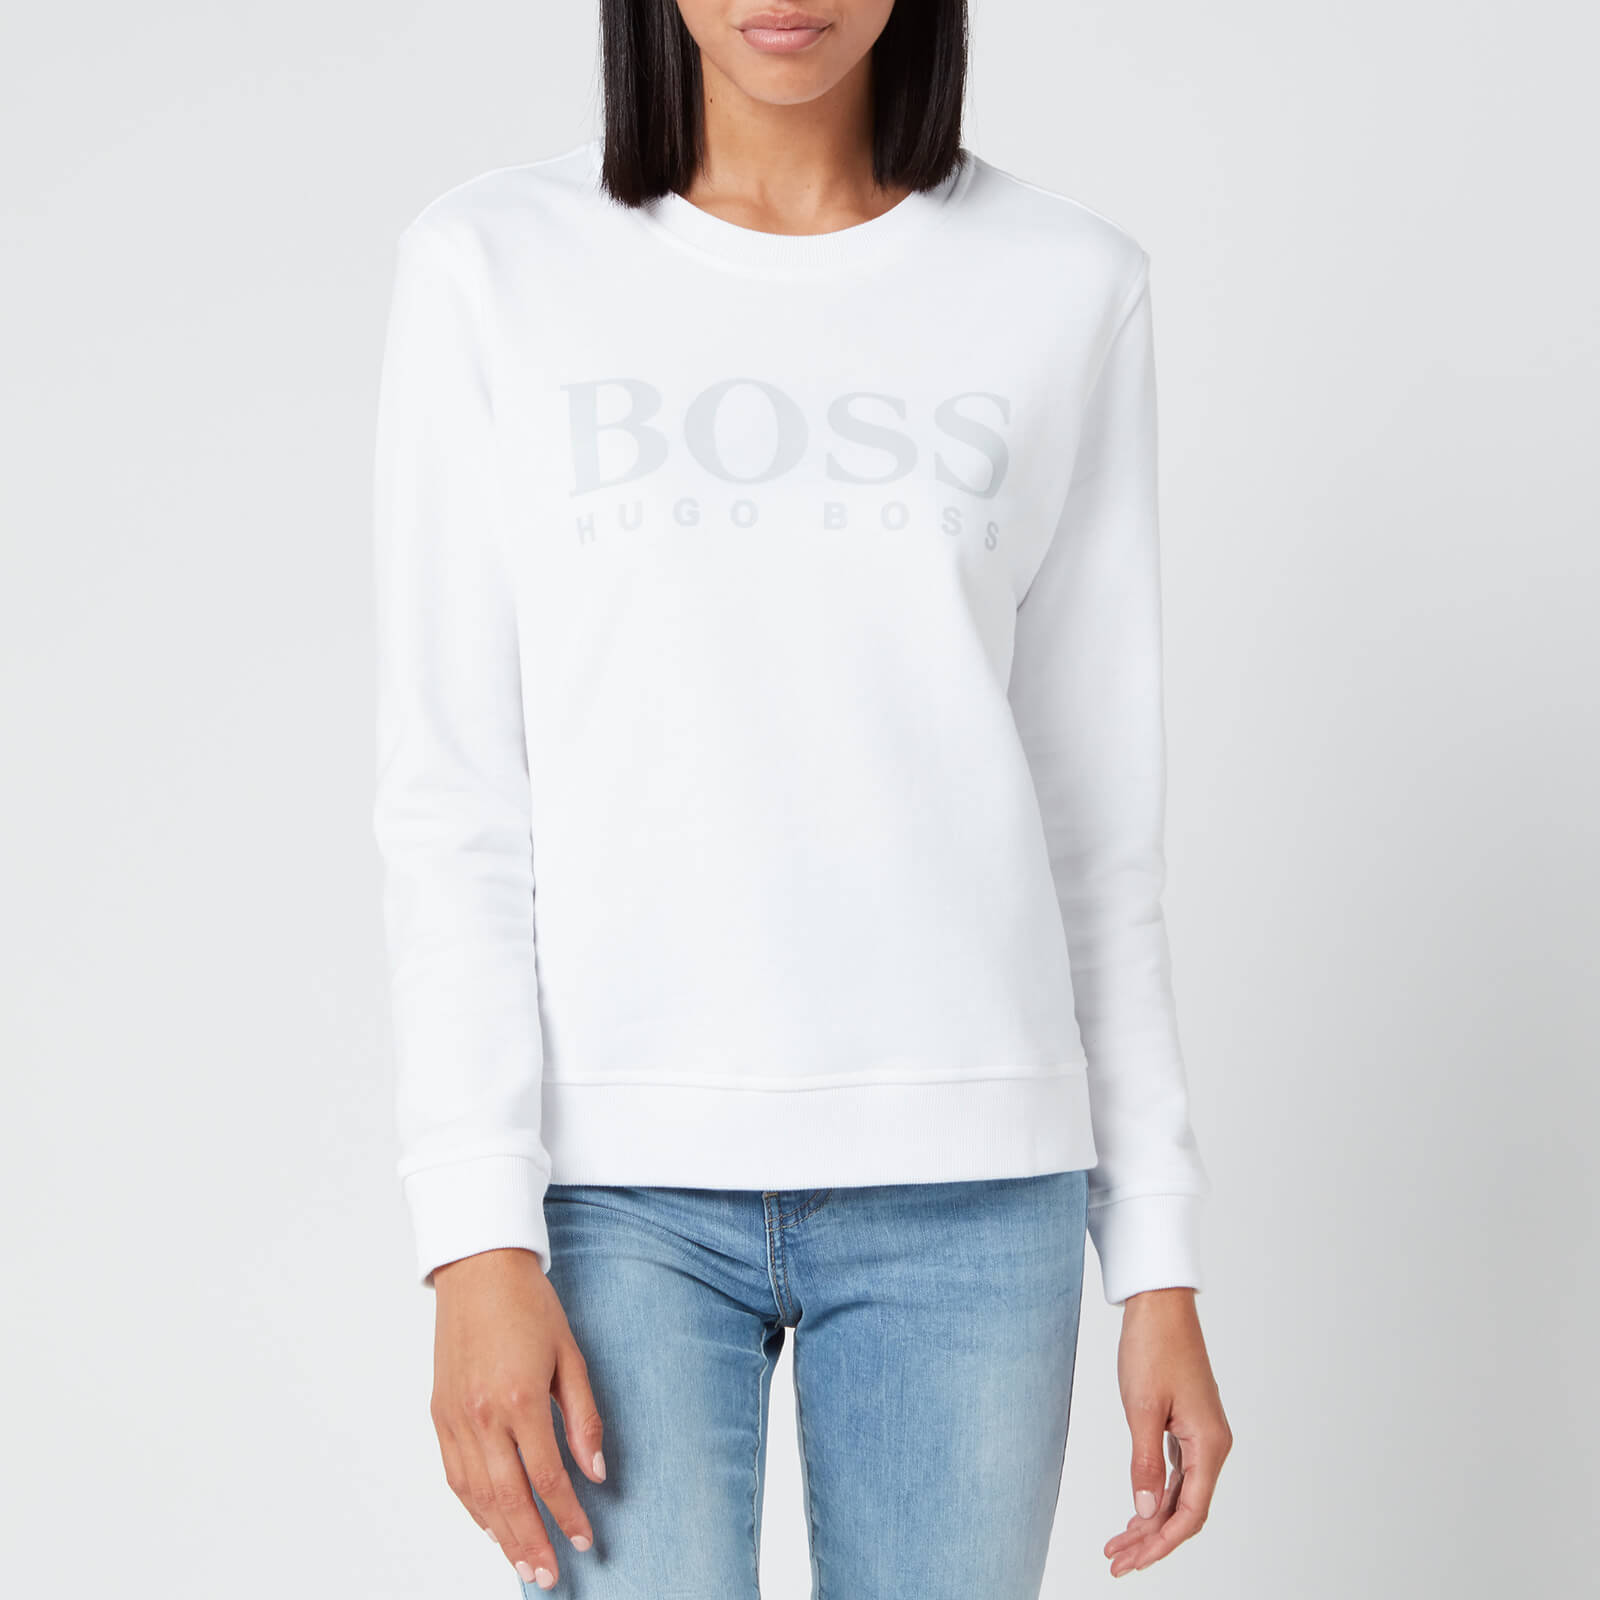 women's boss sweatshirt